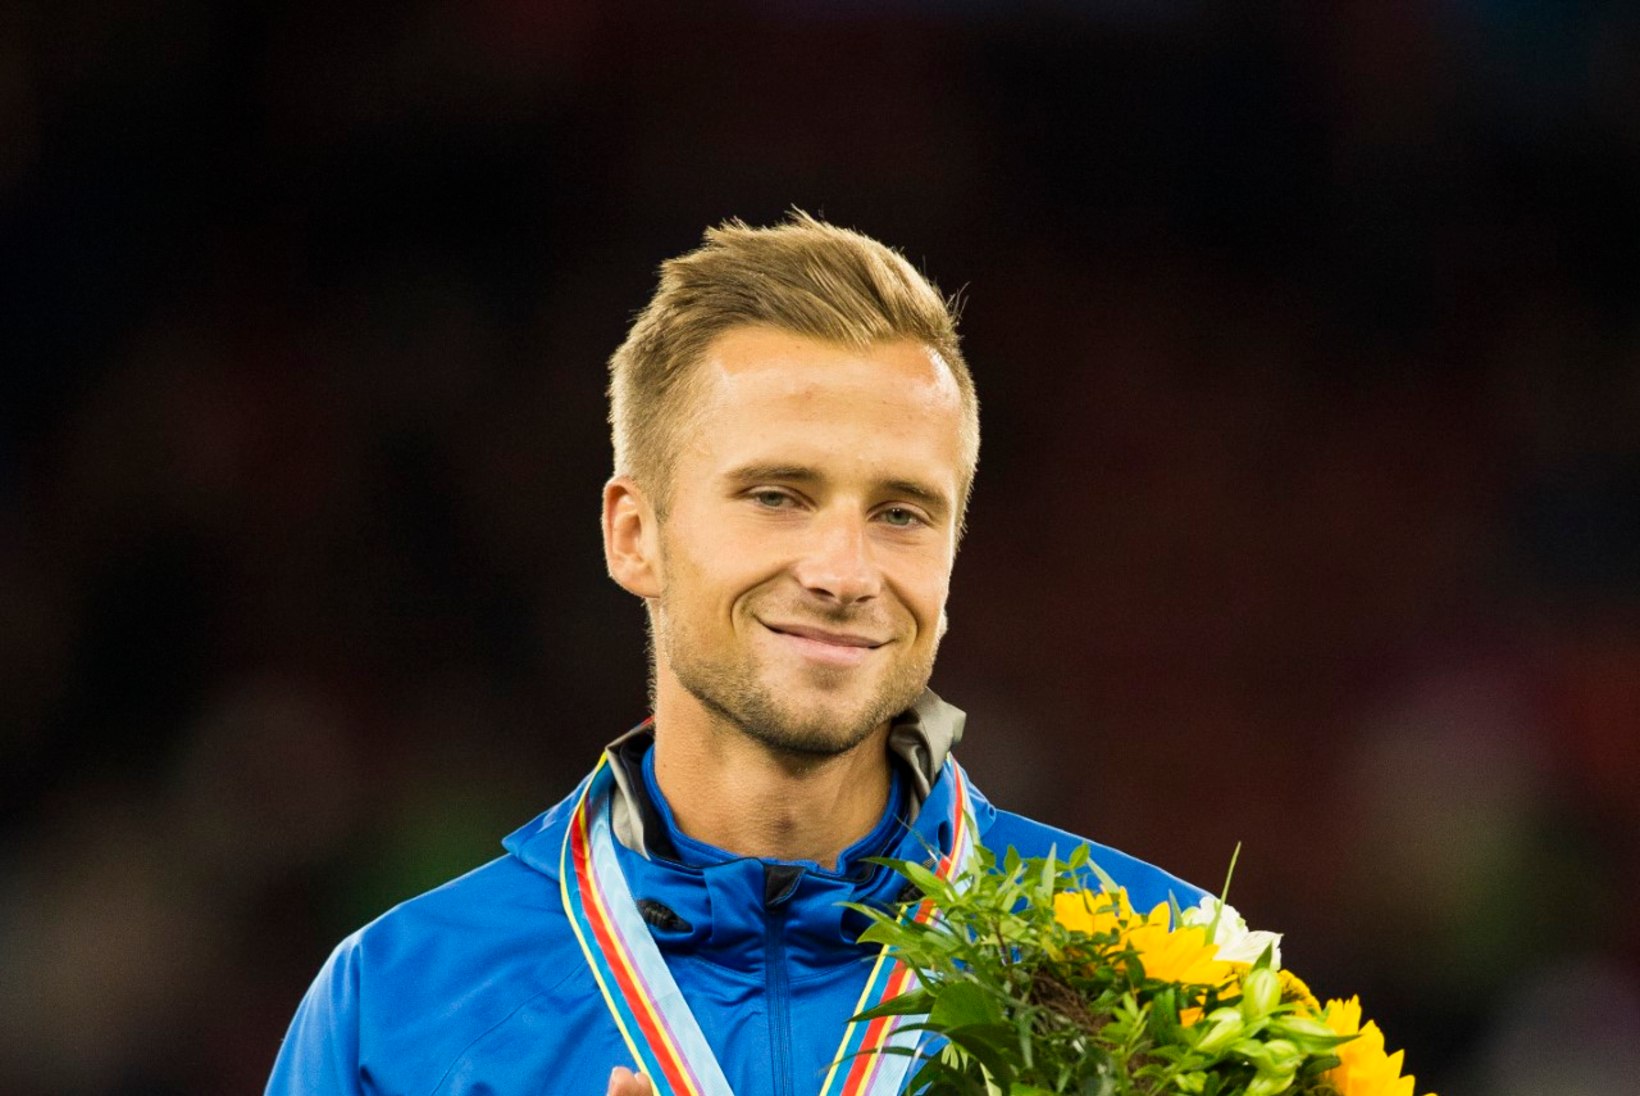 Eesti aasta parimateks sportlasteks valiti Rasmus Mägi ja Erika Kirpu